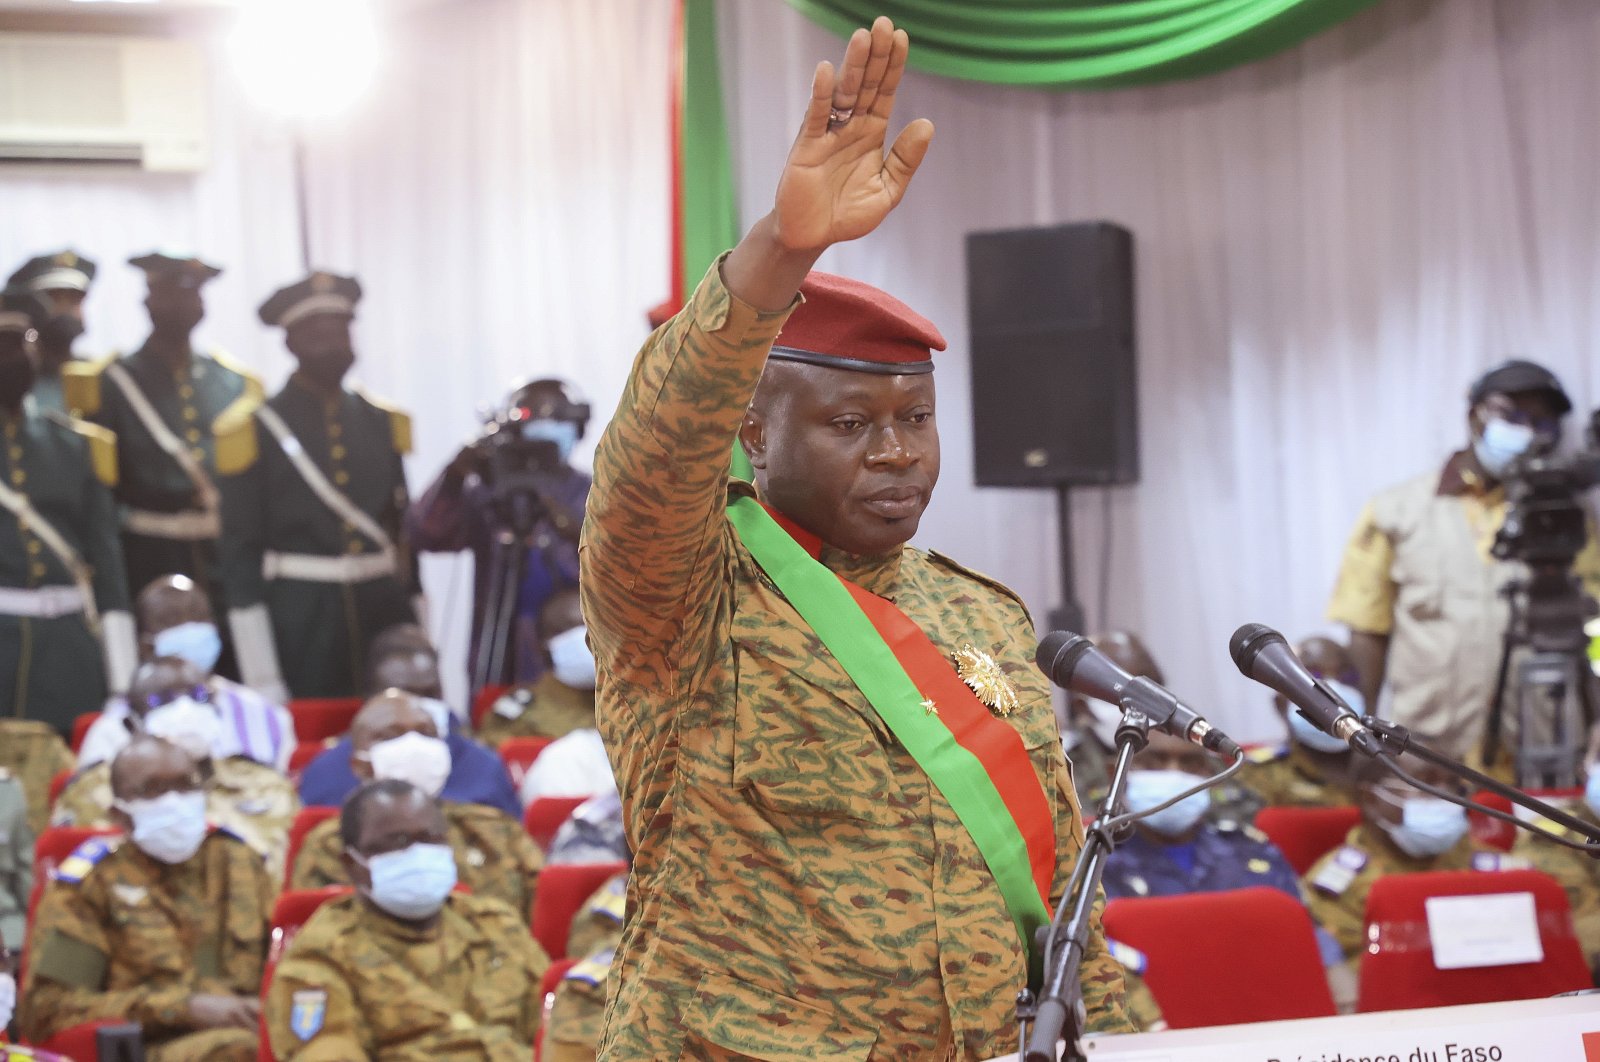 Pemimpin junta Burkina Faso mundur, melarikan diri setelah kudeta